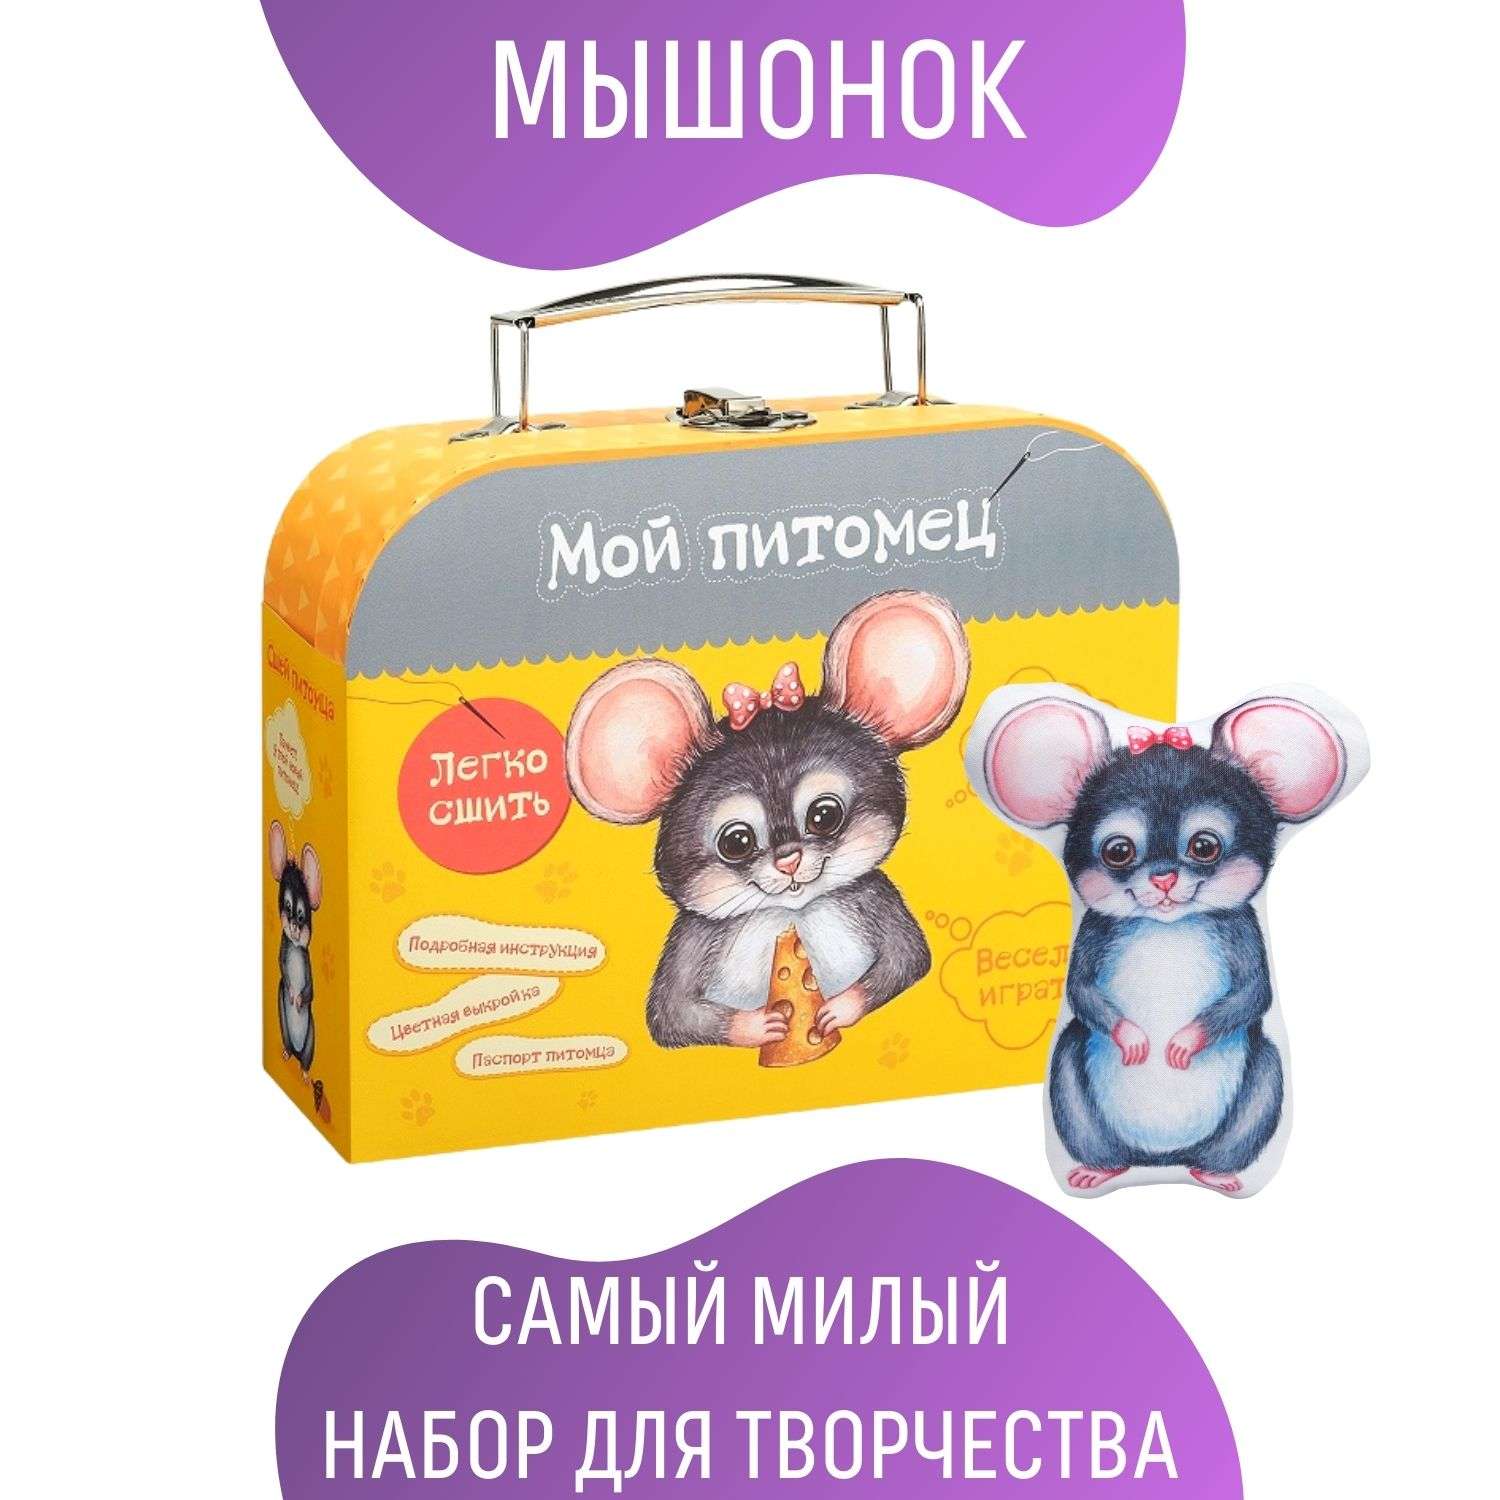 Набор для творчества Бумбарам игрушка своими руками в чемоданчике Мышонок - фото 3